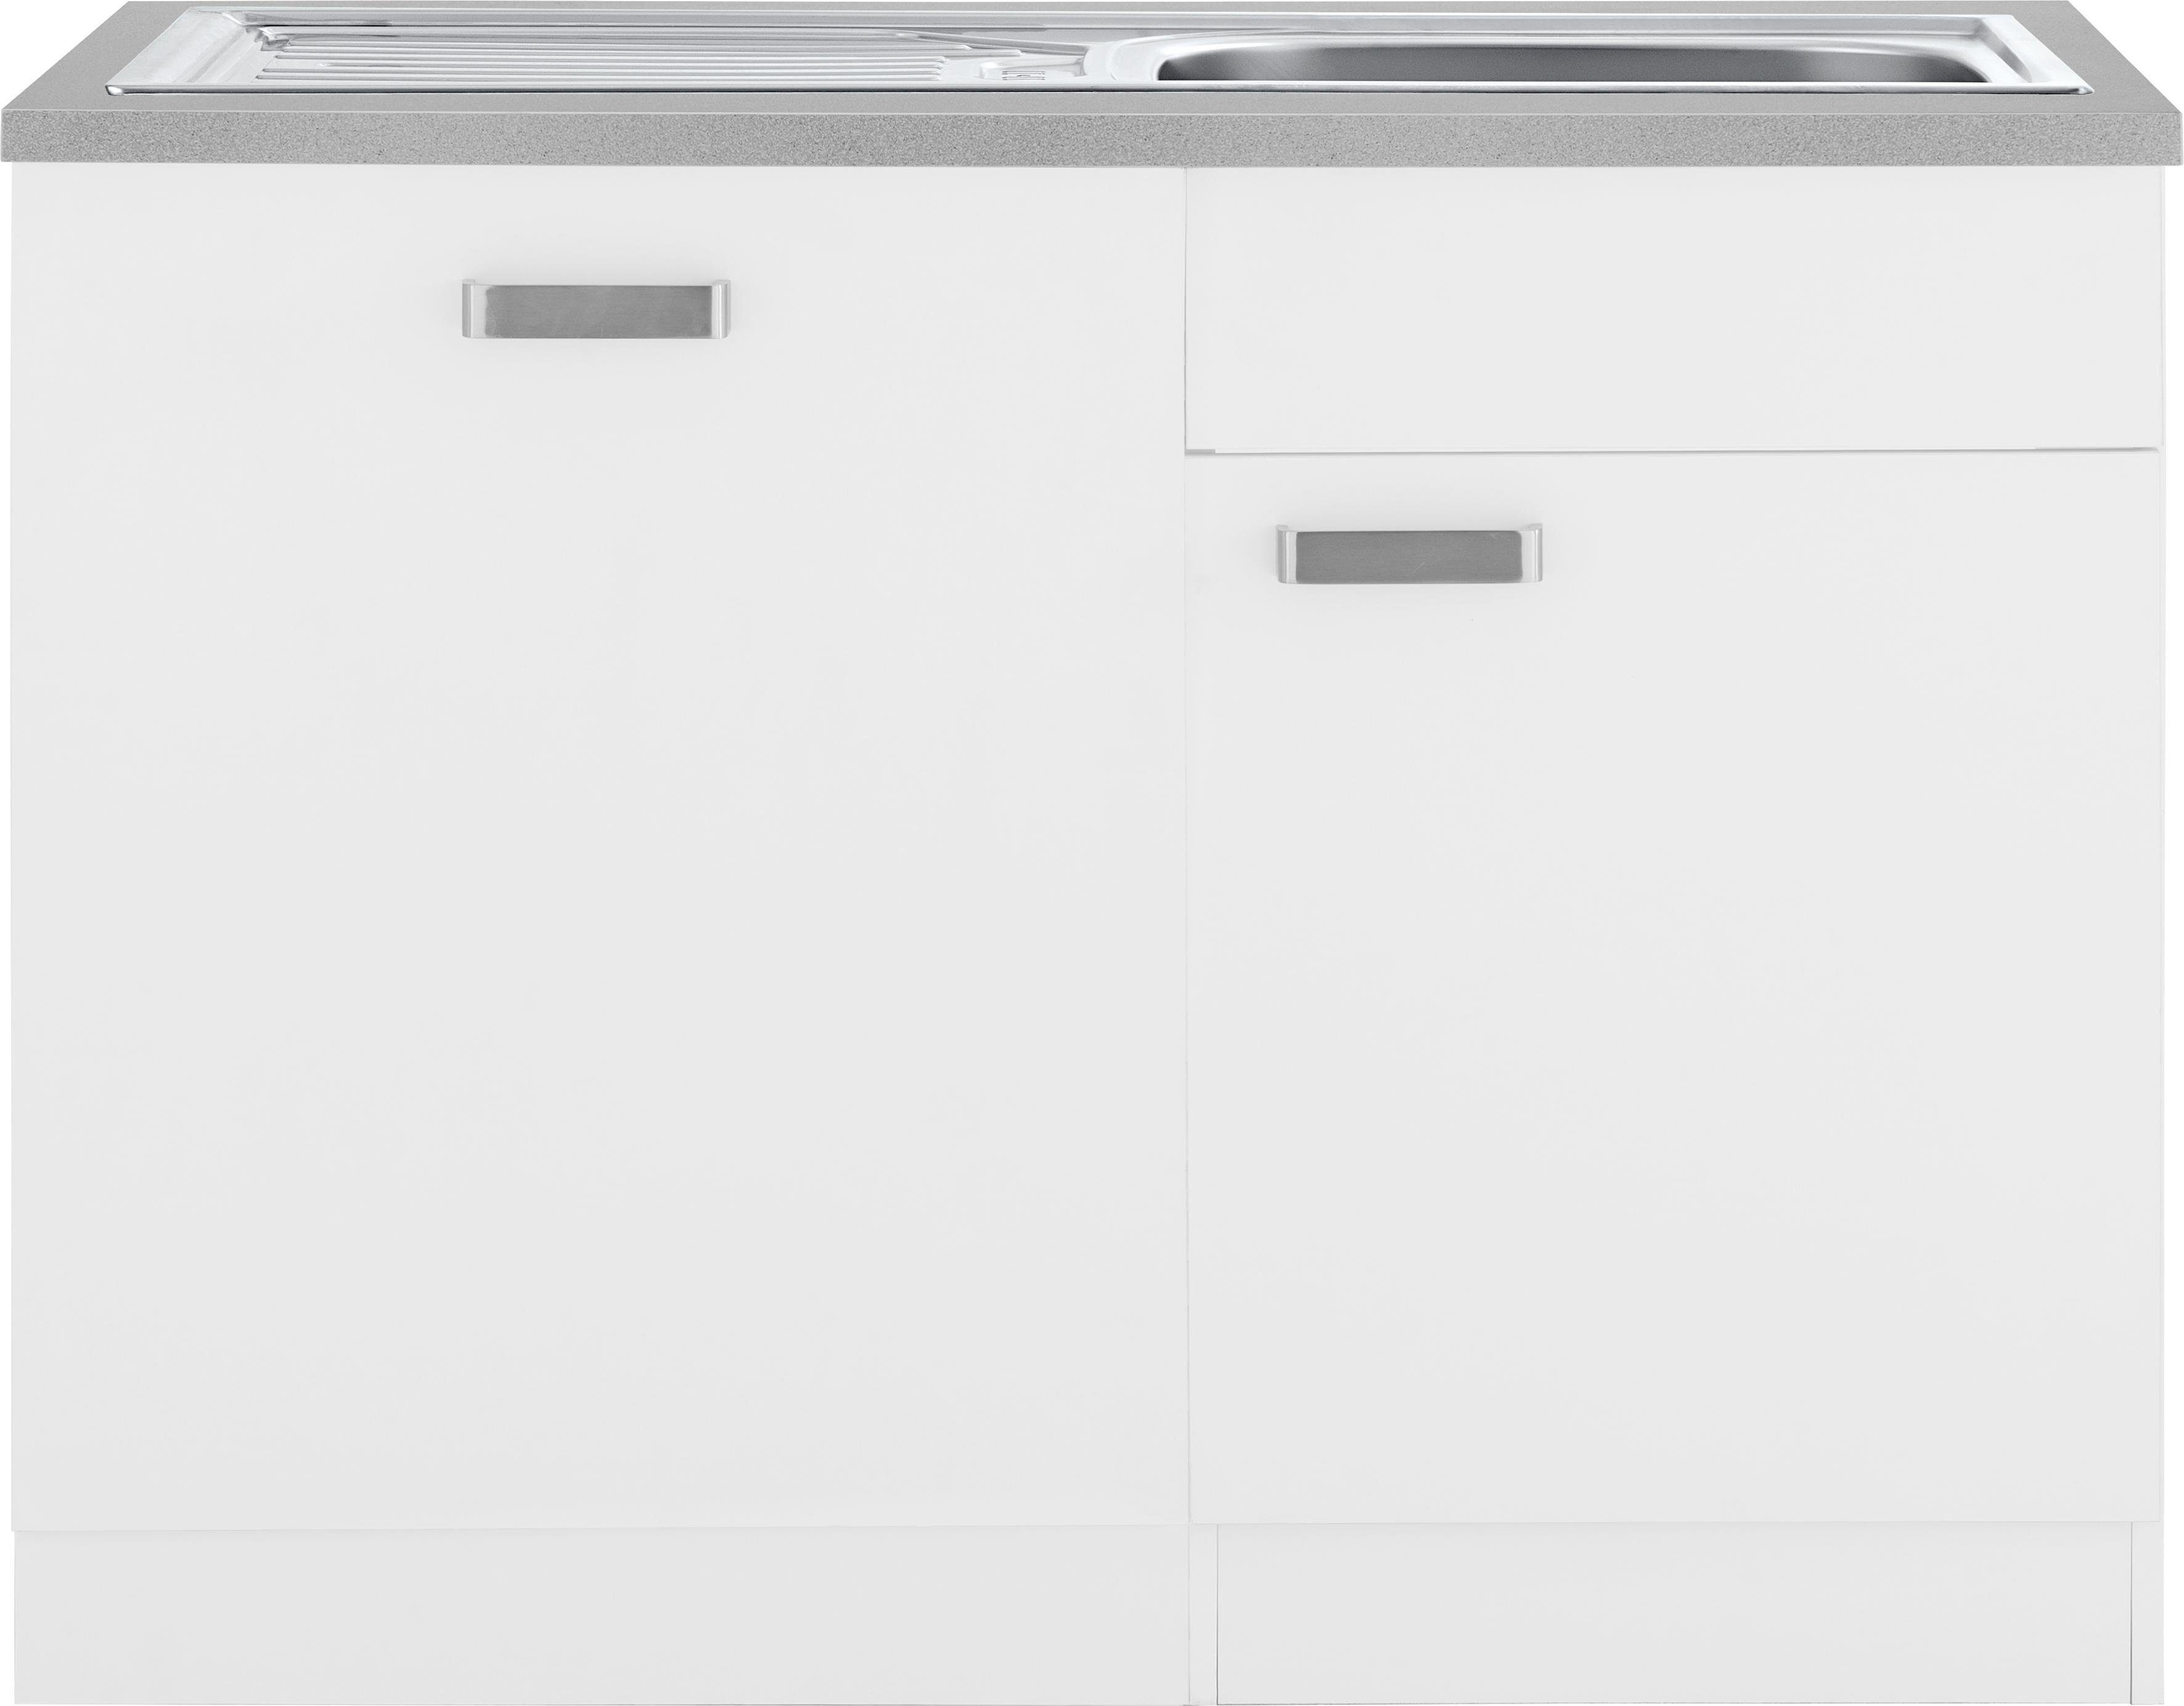 wiho Küchen Spülenschrank Husum 110 cm breit, inkl. Tür/Sockel für Geschirrspüler weiß/weiß